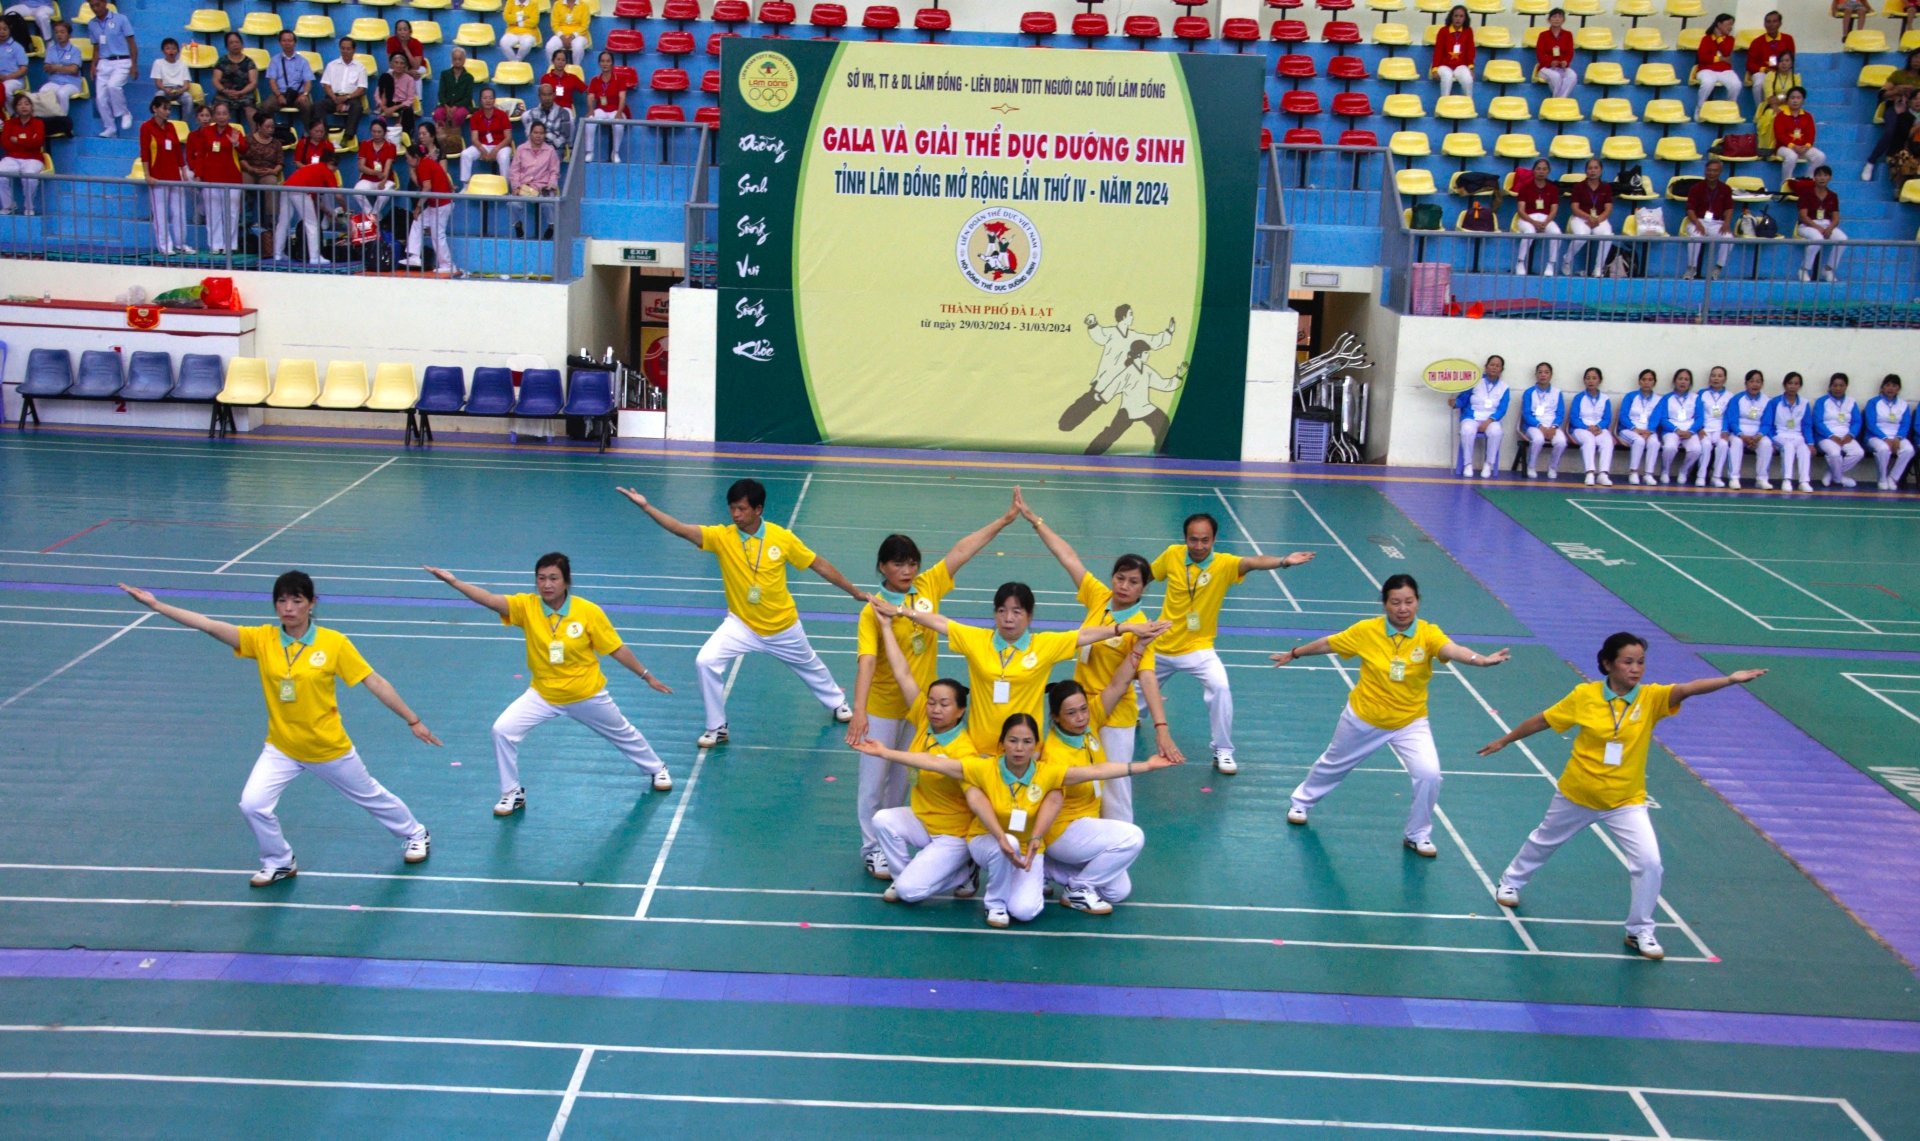 Huyện Di Linh giành giải Nhất toàn đoàn tại Giải thể dục Dưỡng sinh Lâm Đồng mở rộng lần thứ IV-2024